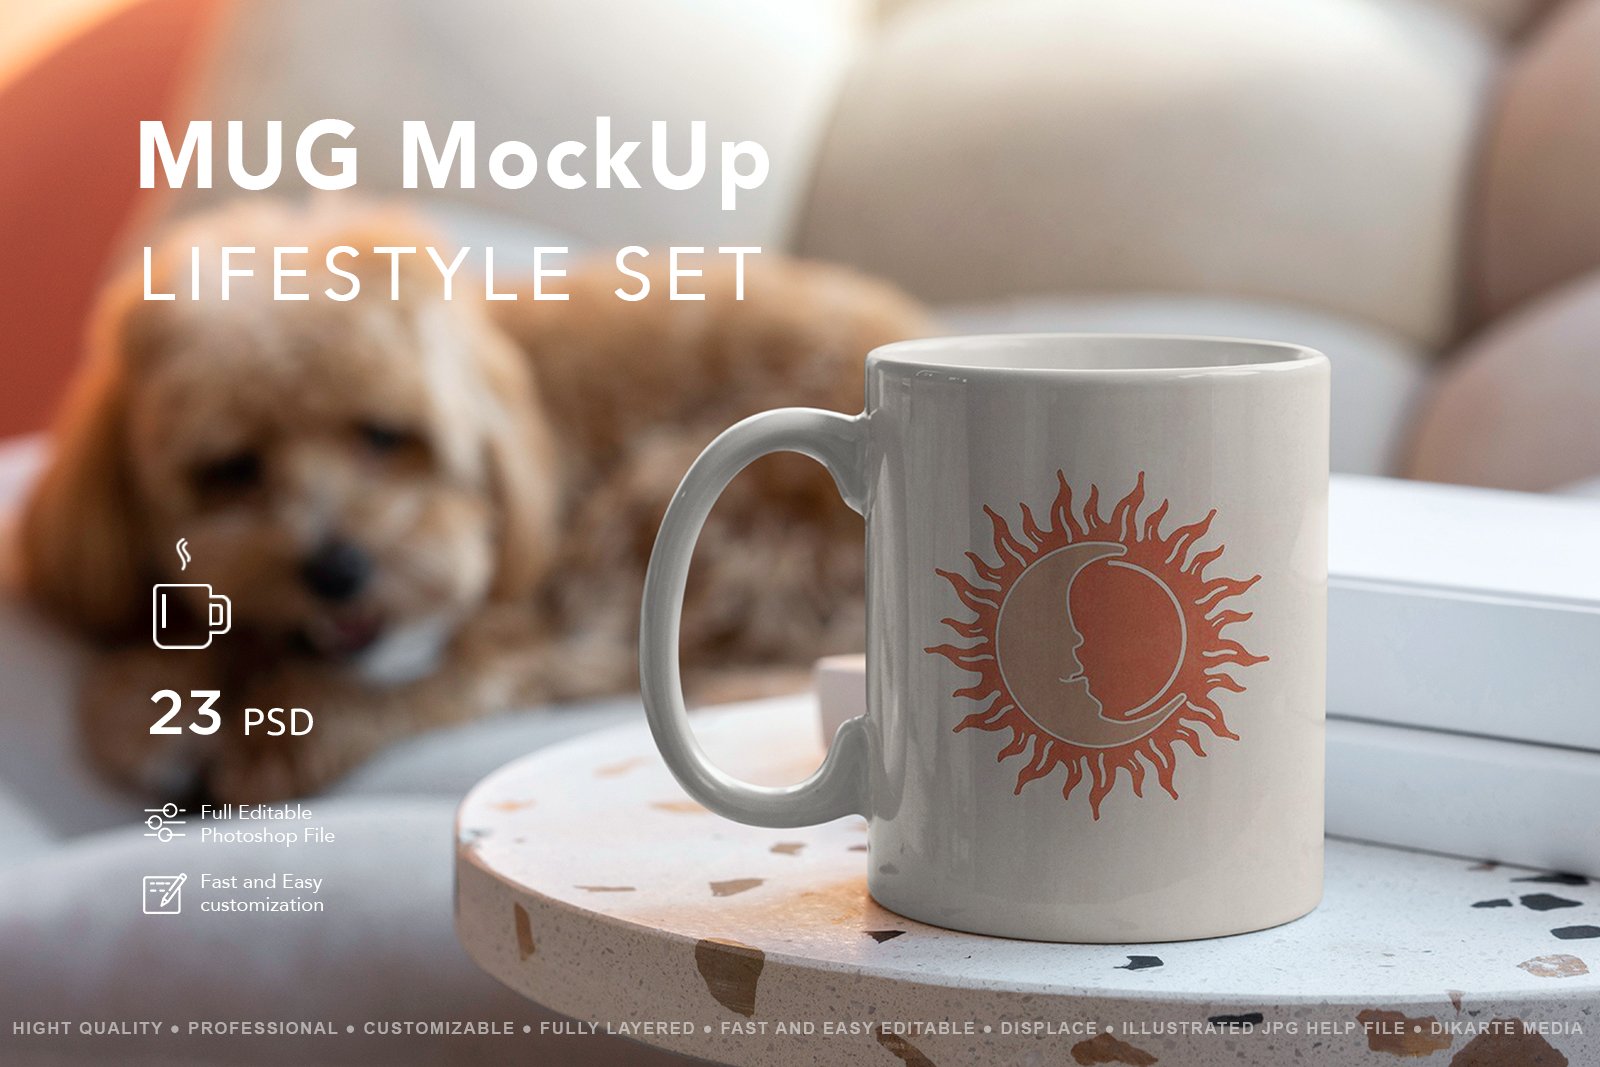 Mug MockUp Lifestyle Set cover image.